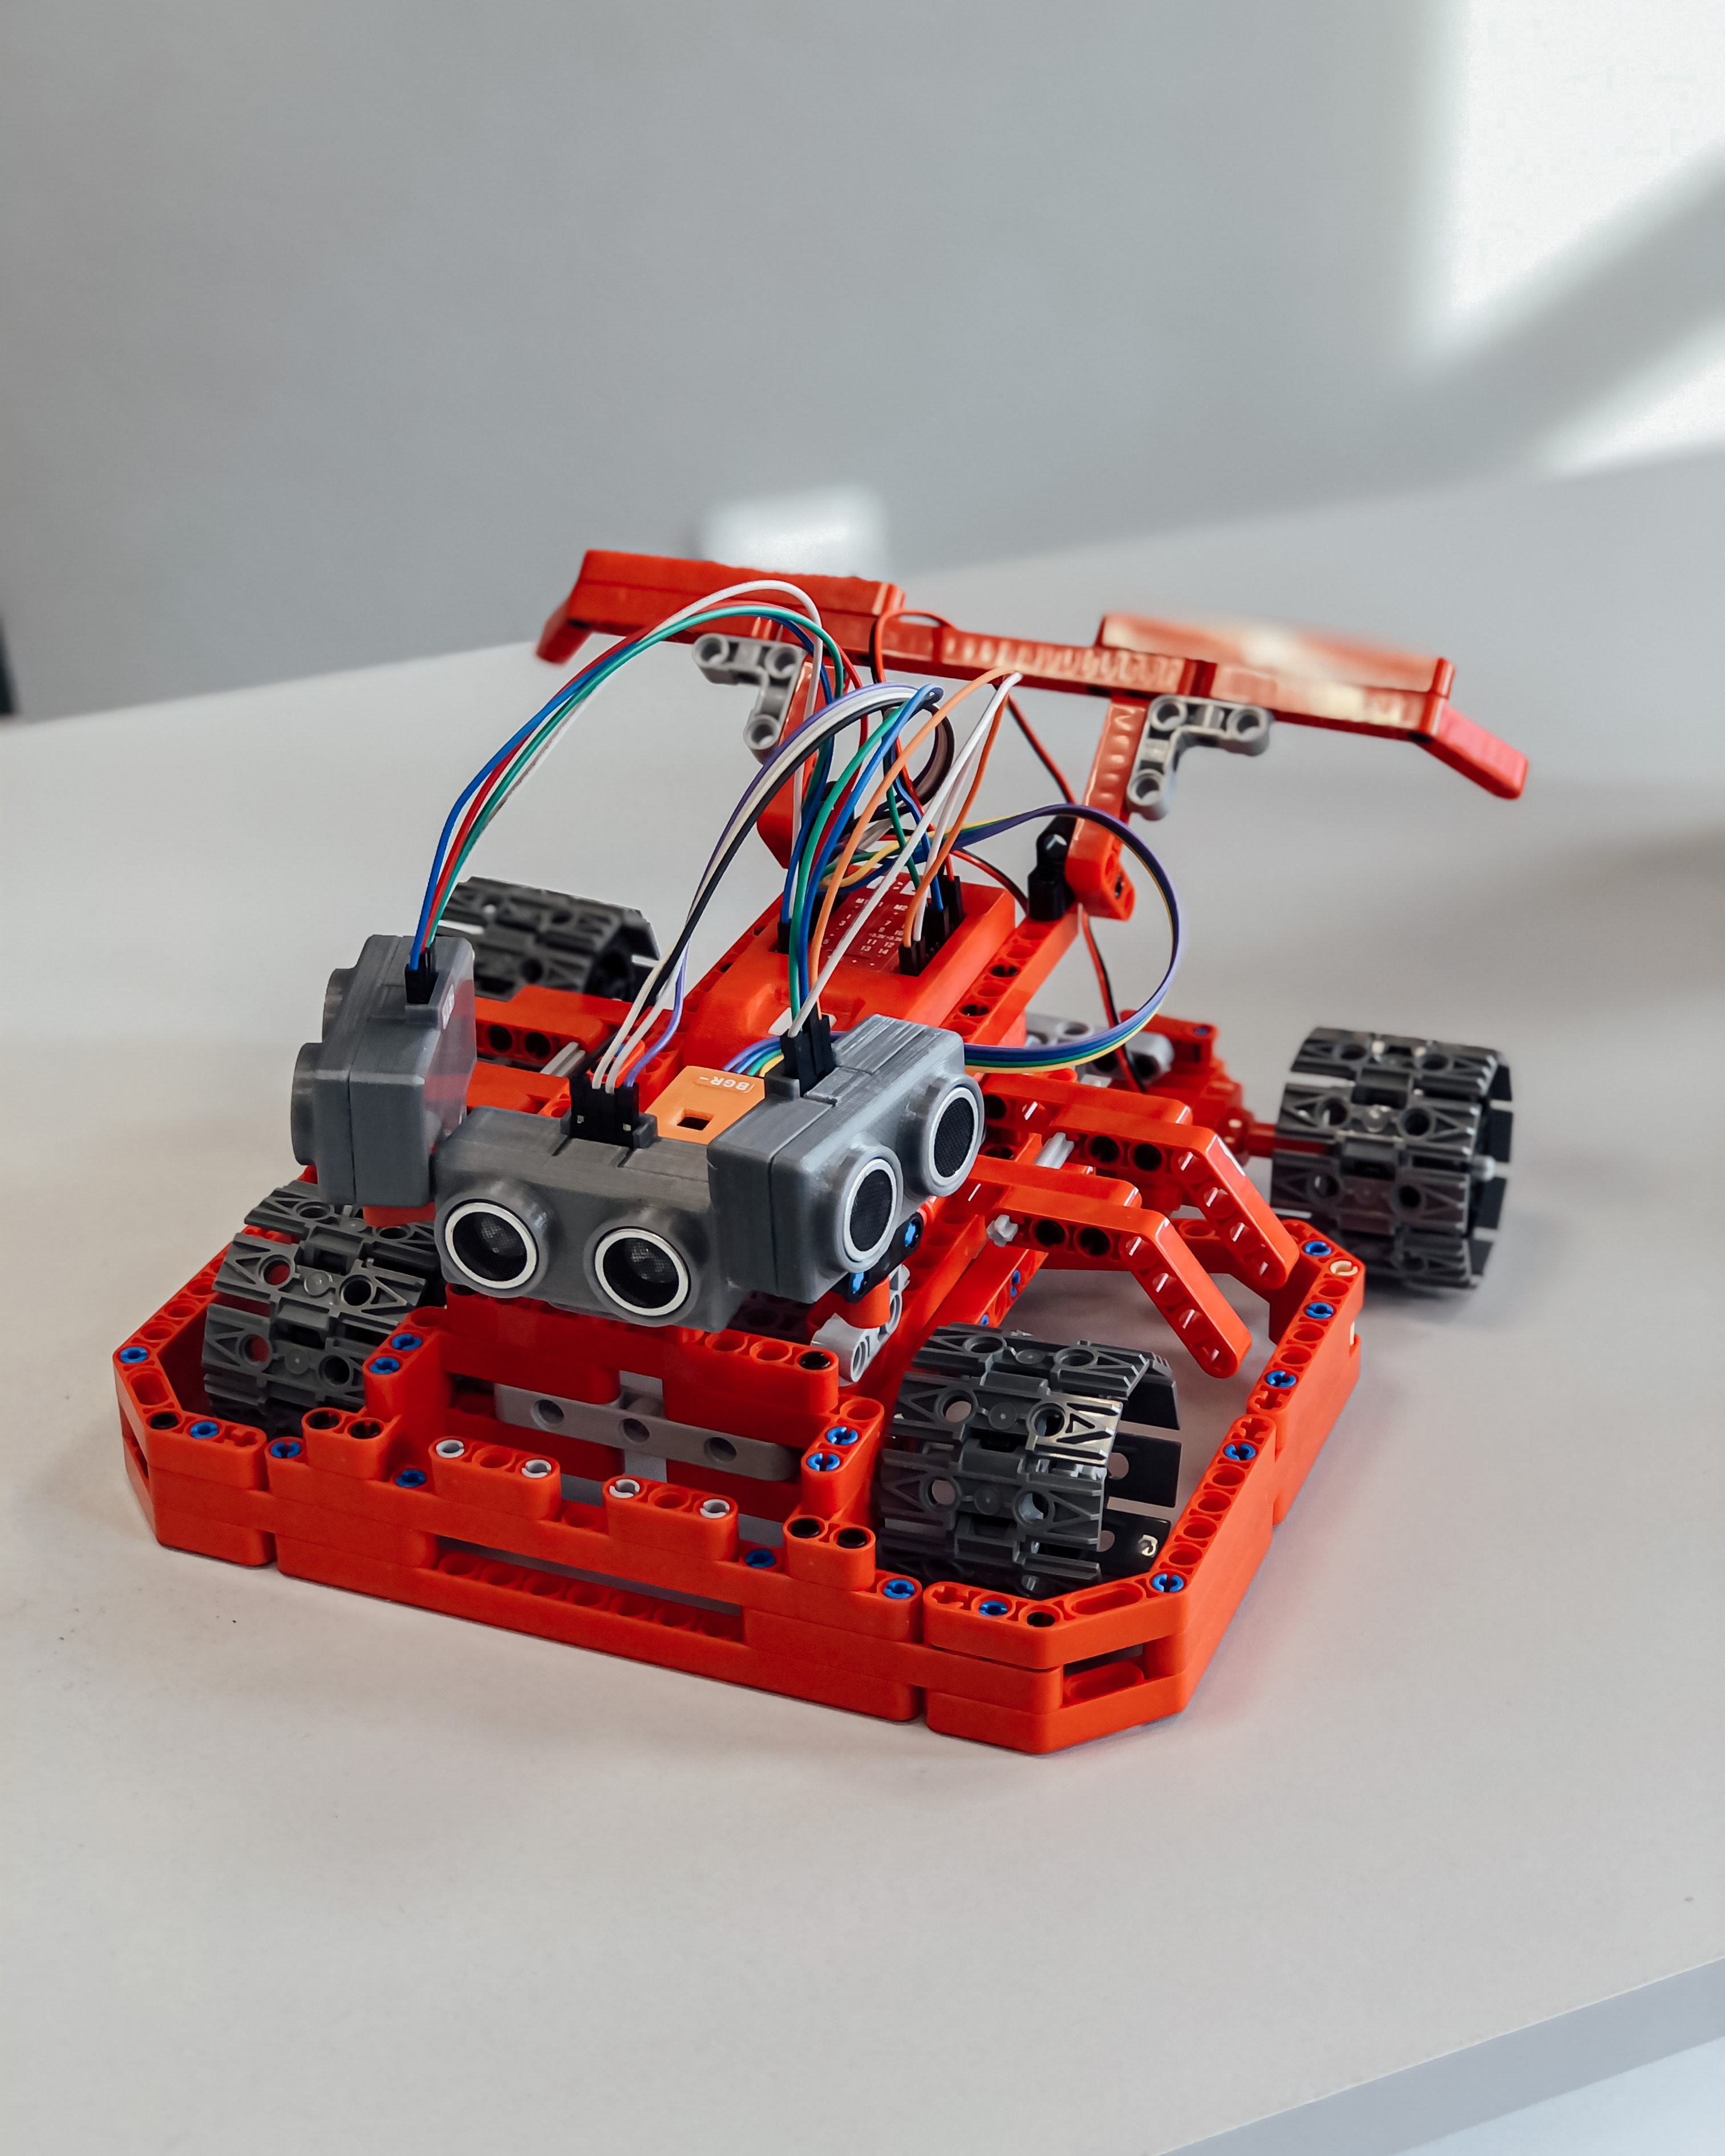 Фото: Школа робототехники и программирования Roboschool